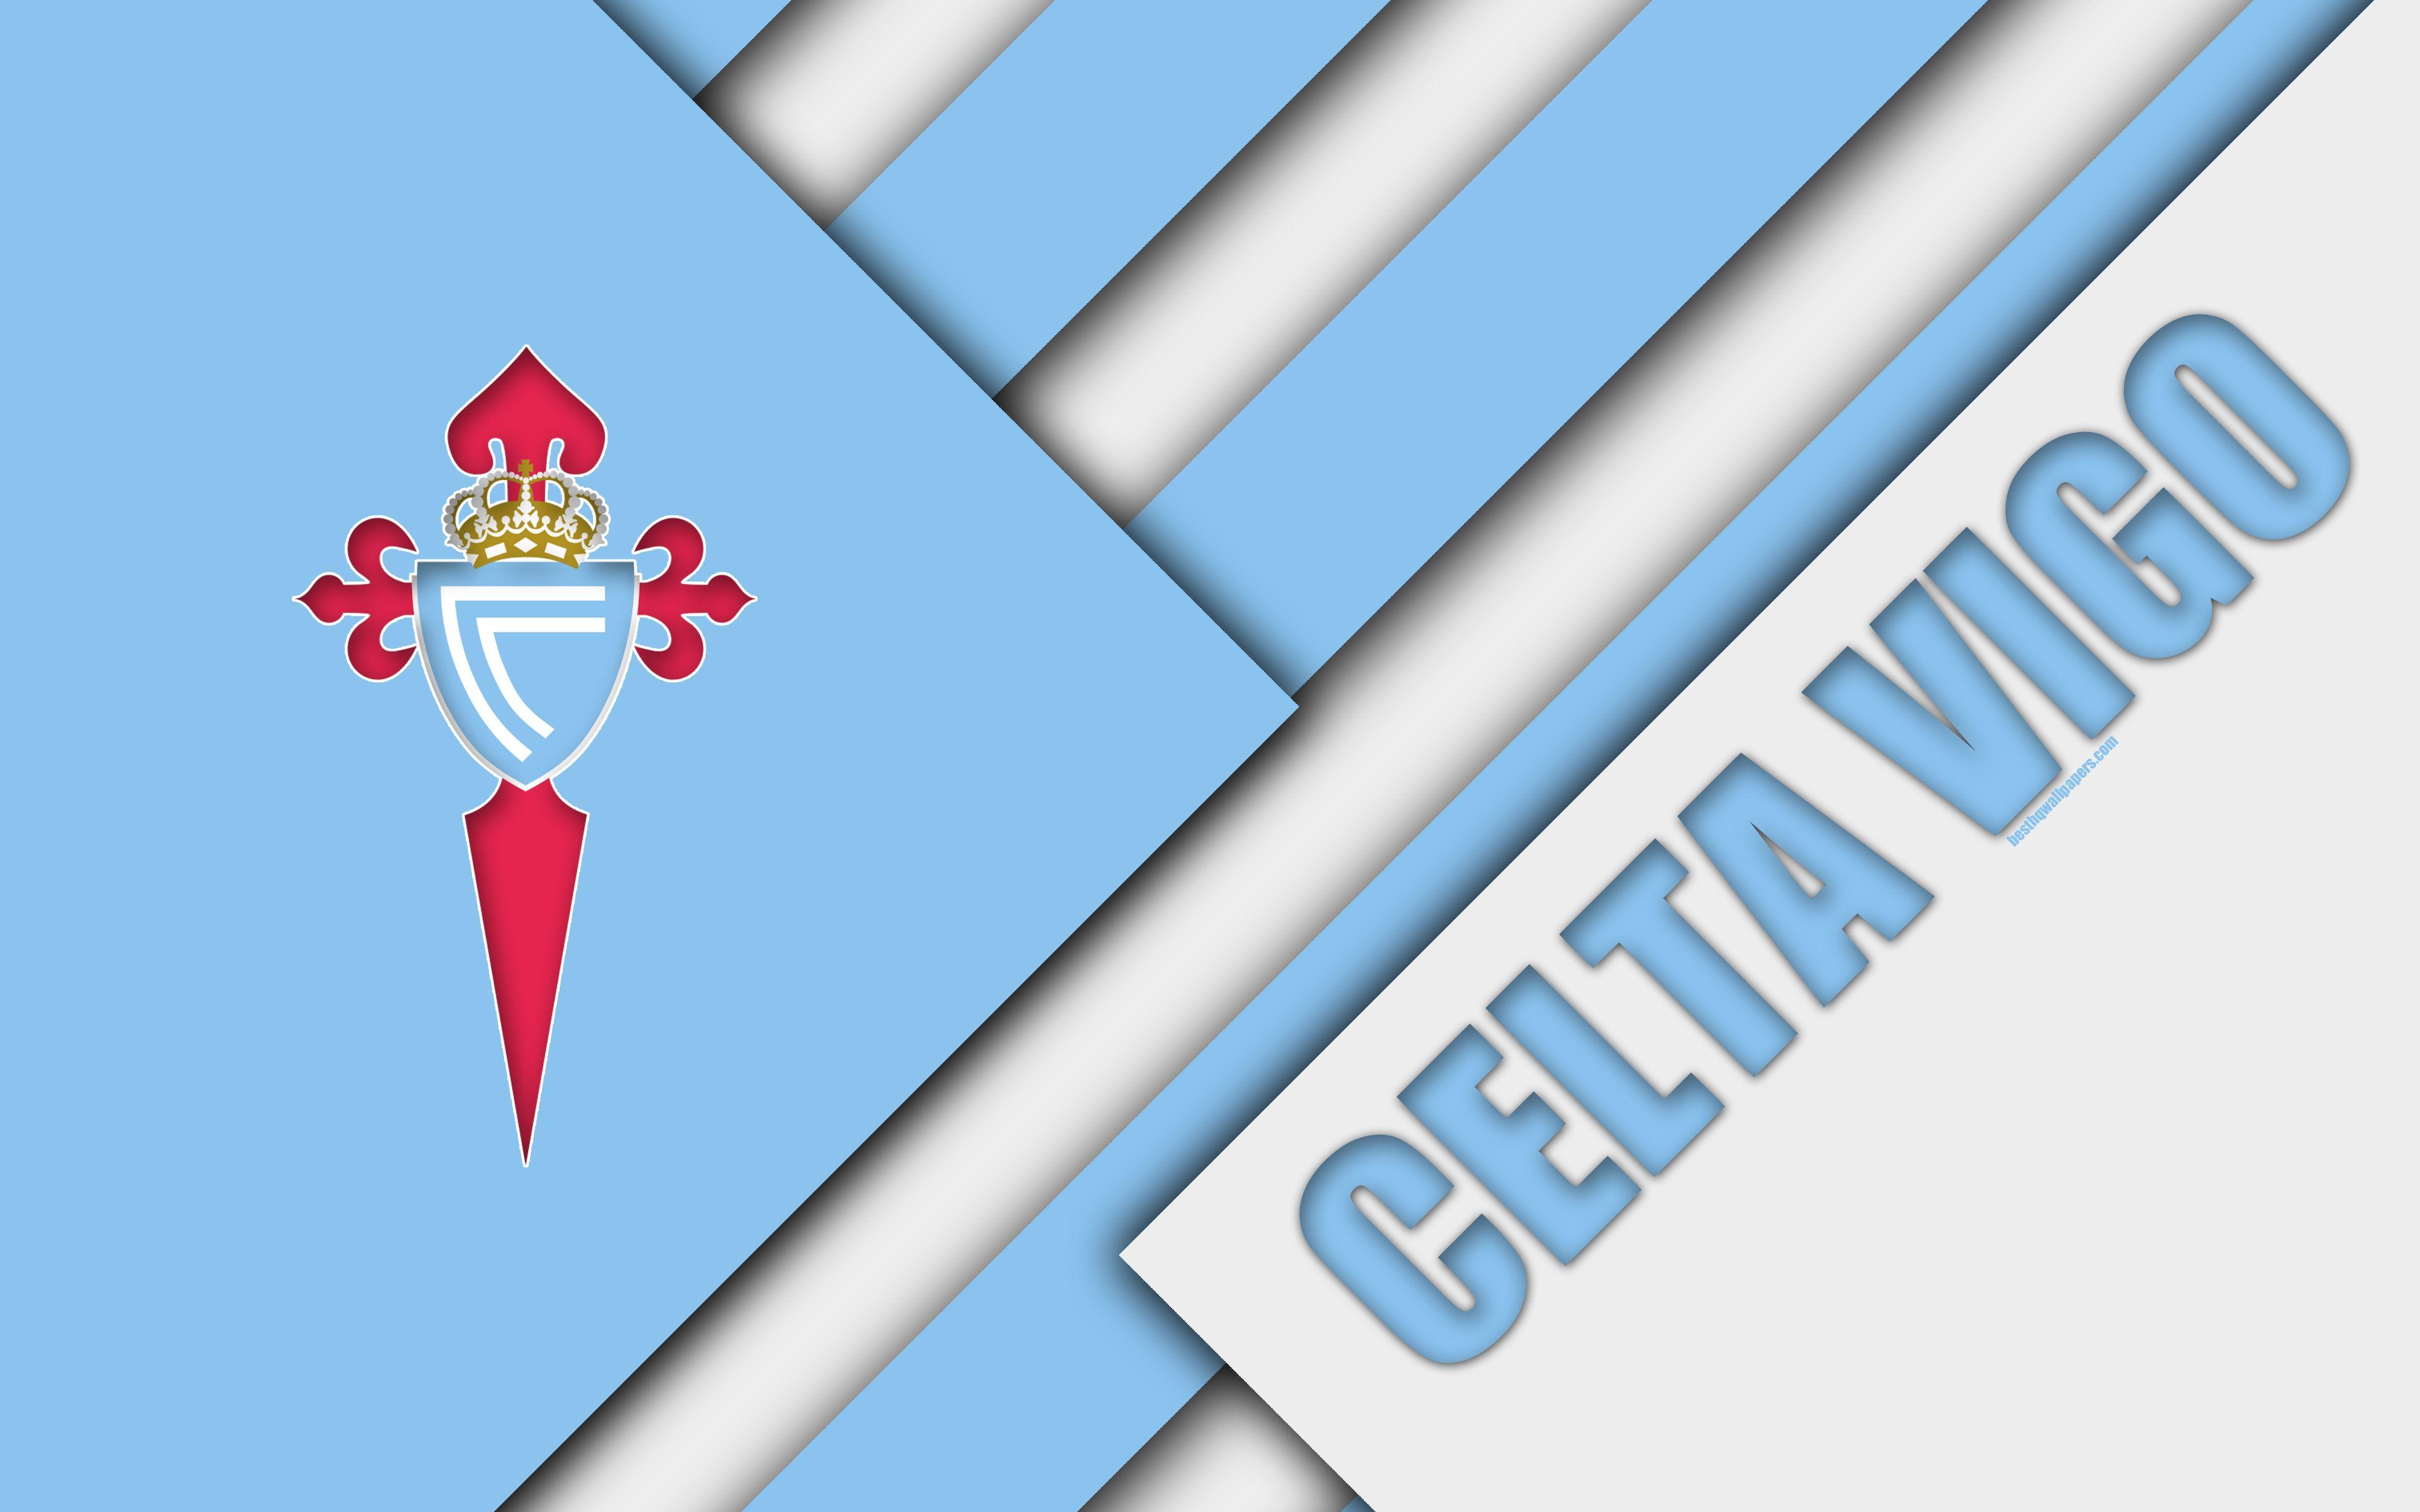 Download wallpaper Celta Vigo FC, 4K, Spanish football club, Celta